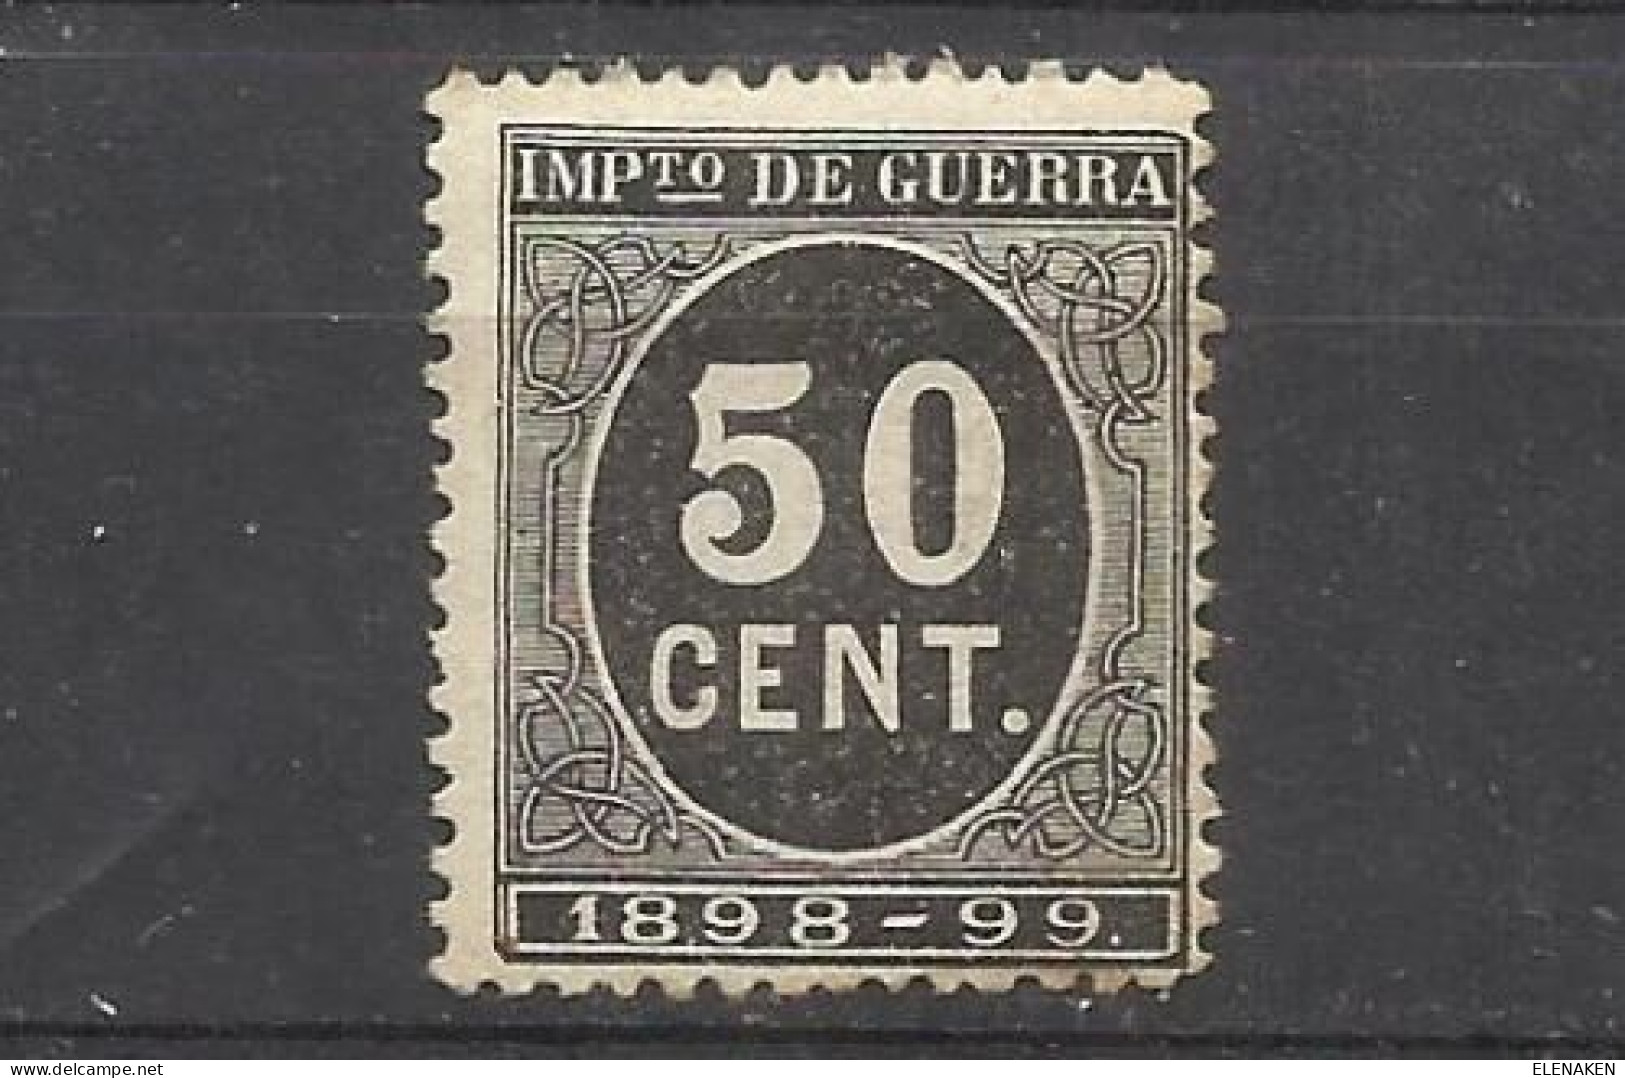 2100B -SELLO IMPUESTO DE GUERRA FISCAL AÑO 1898-1898,PARA SUFRAGAR LAS COSTAS DE LAS GUERRAS EN ULTRAMAR.SPAIN REVENUE - Kriegssteuermarken